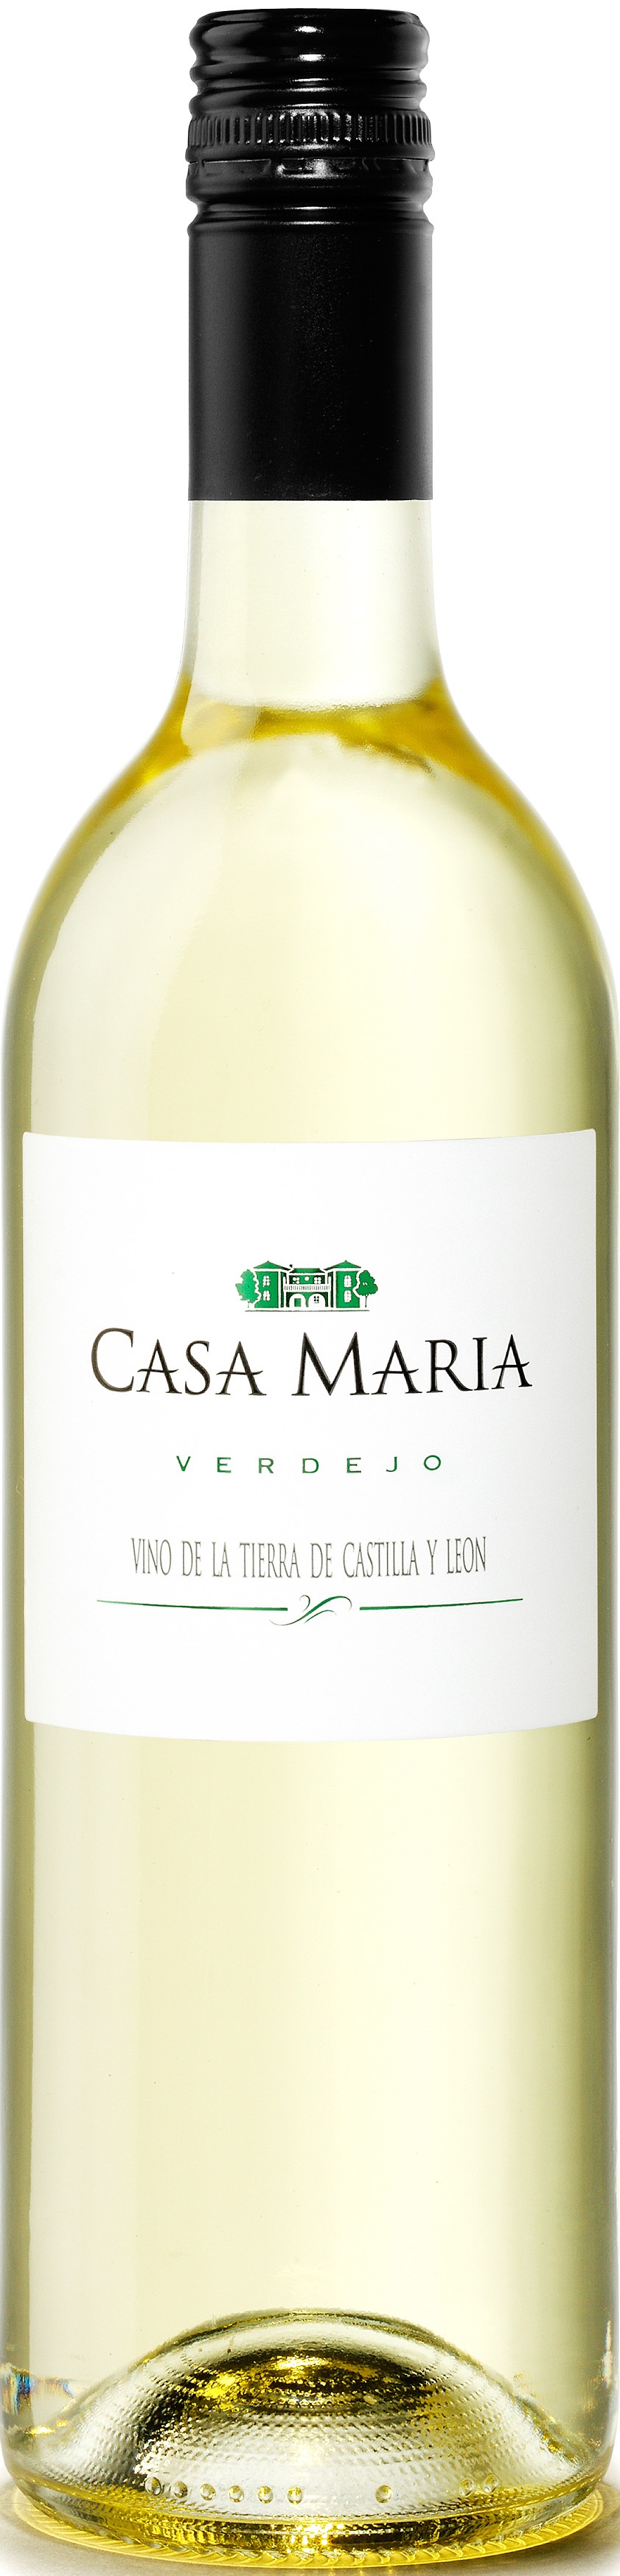 Image of Wine bottle Casa María Verdejo